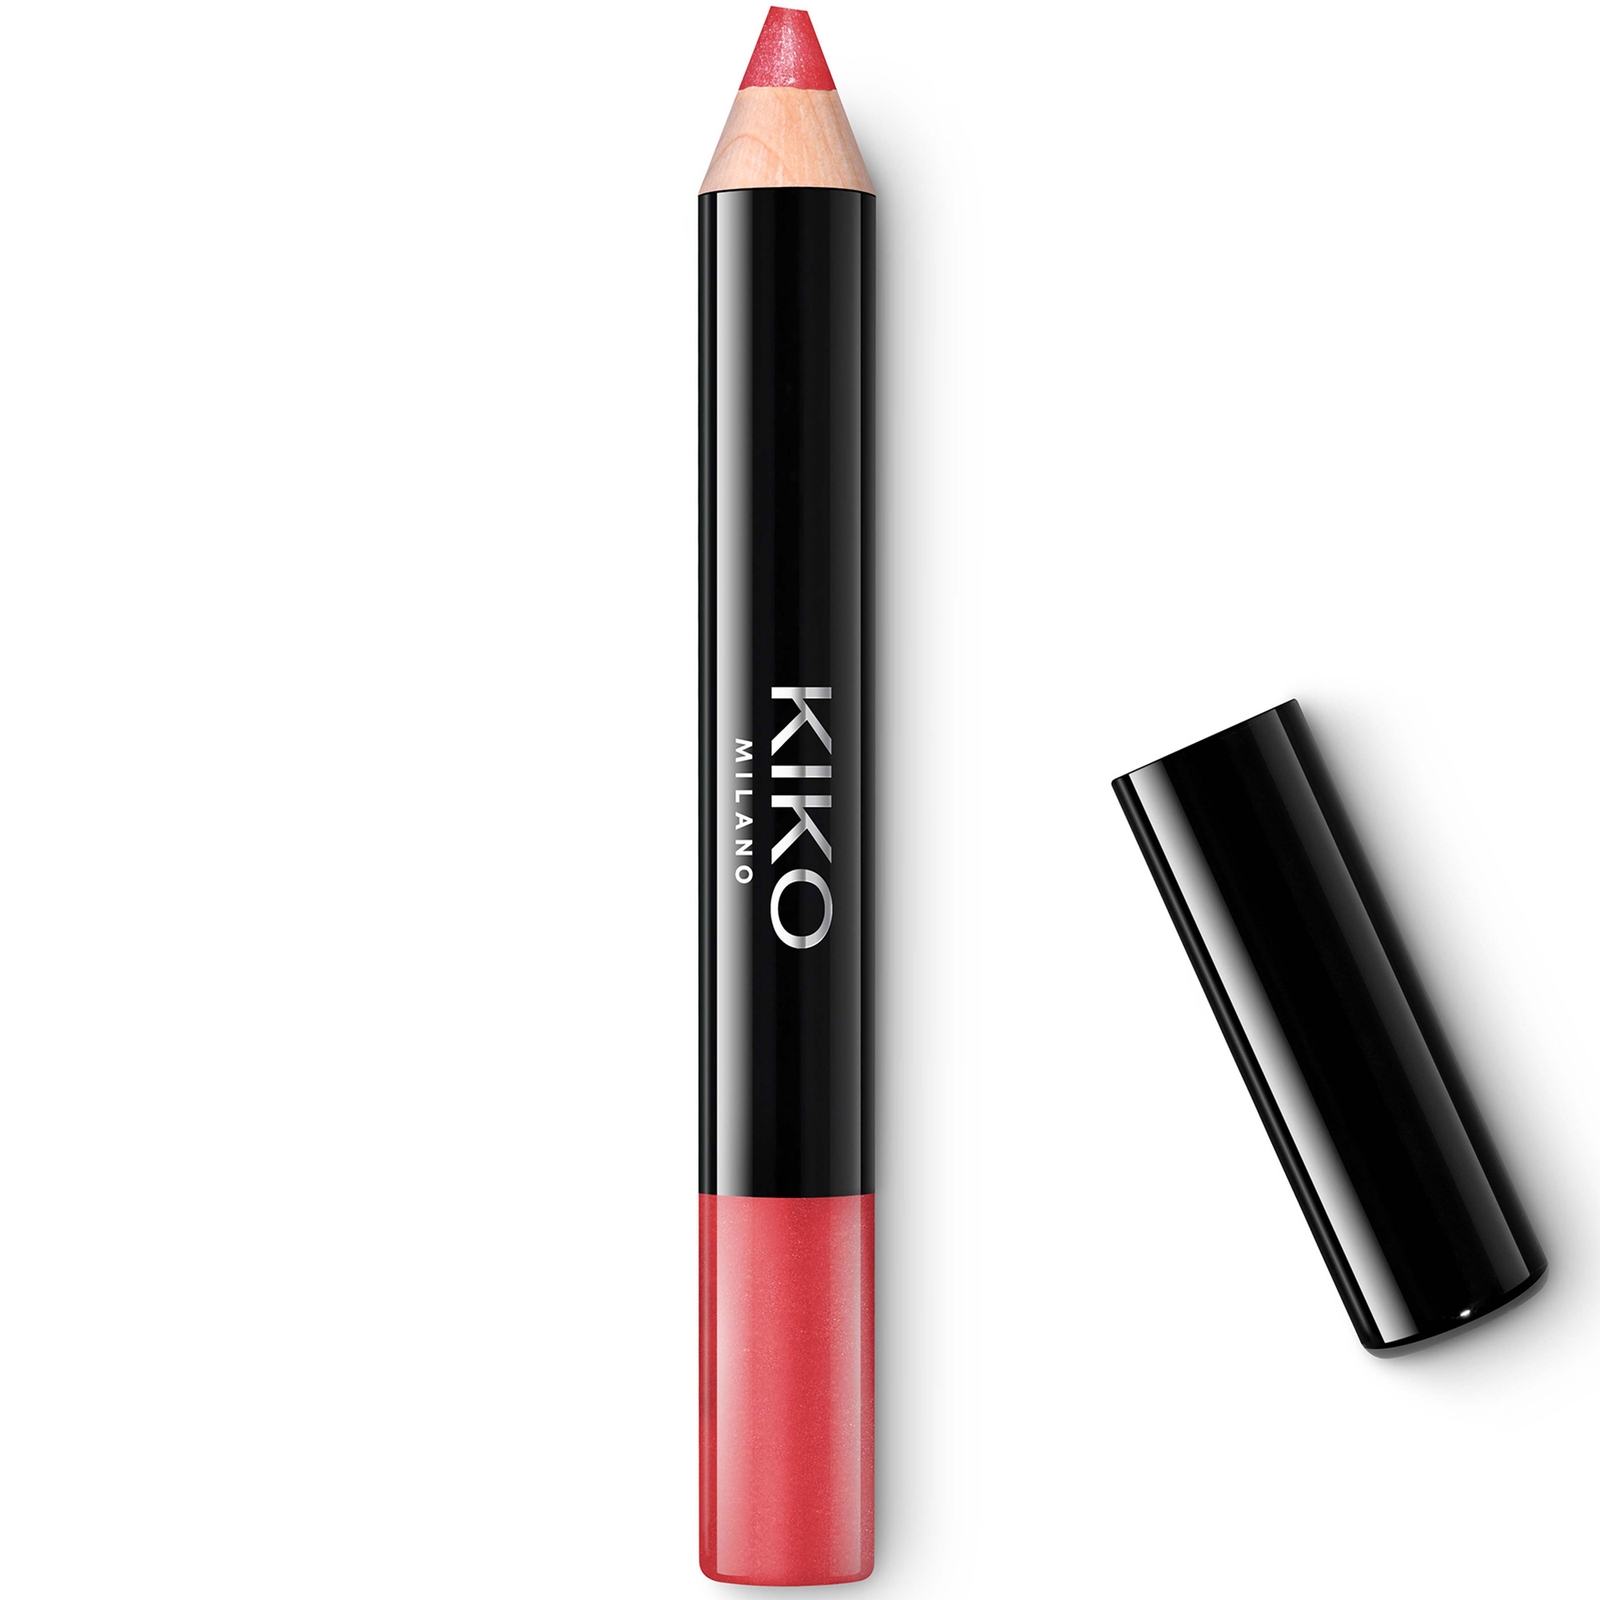 KIKO Milano Smart Fusion Creamy Lip Crayon 1.6g (Various Shades) - 06 Rosy Pink